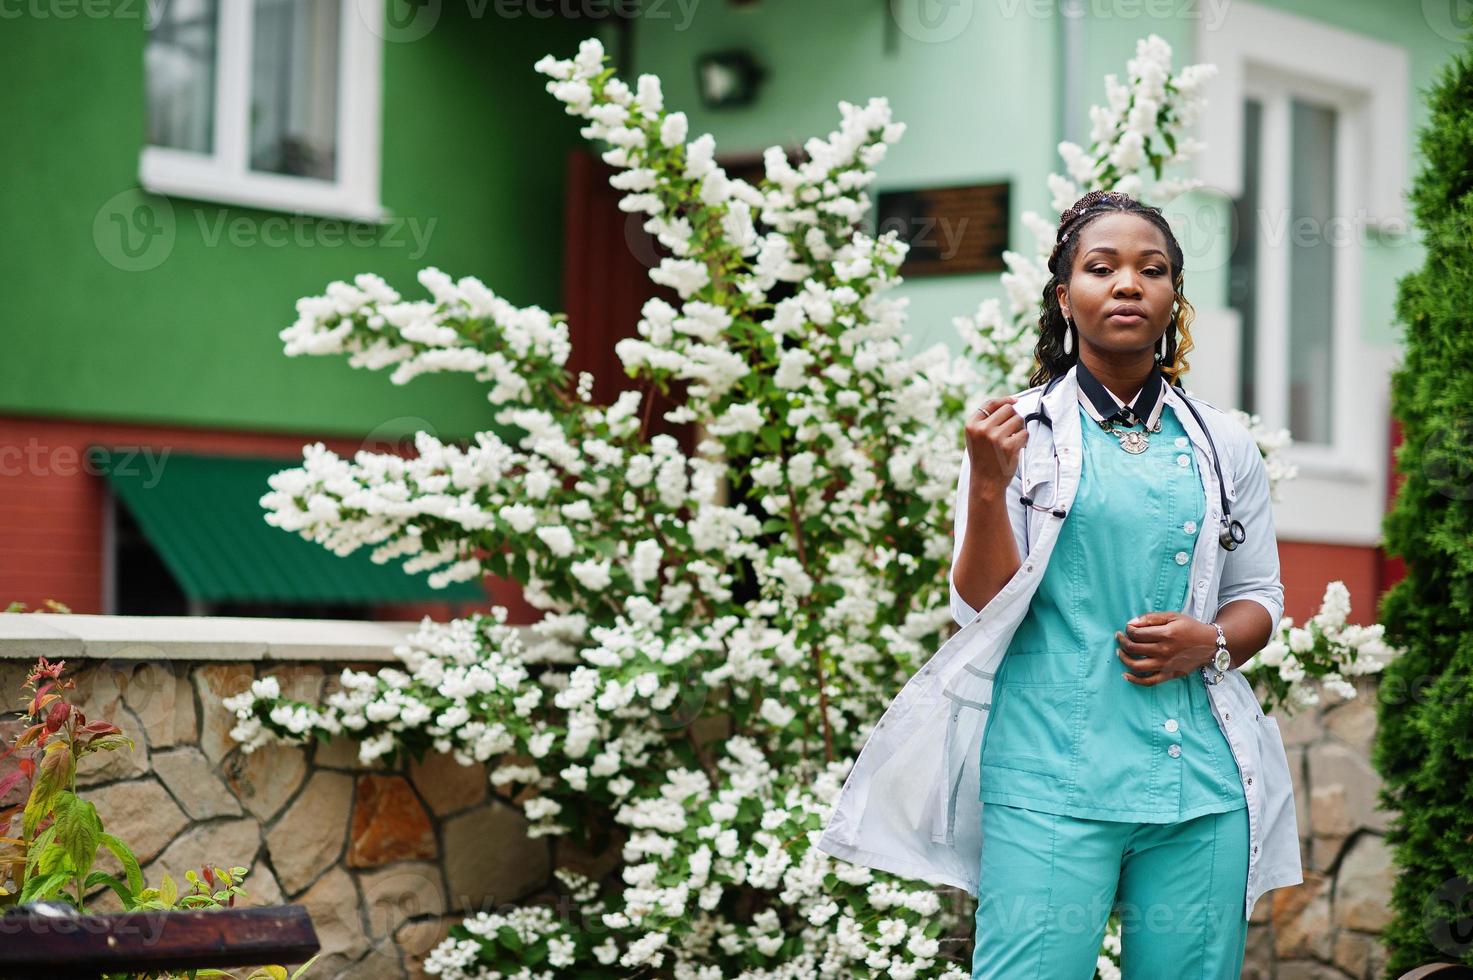 portrait d'une femme médecin afro-américaine avec stéthoscope portant une blouse de laboratoire. photo